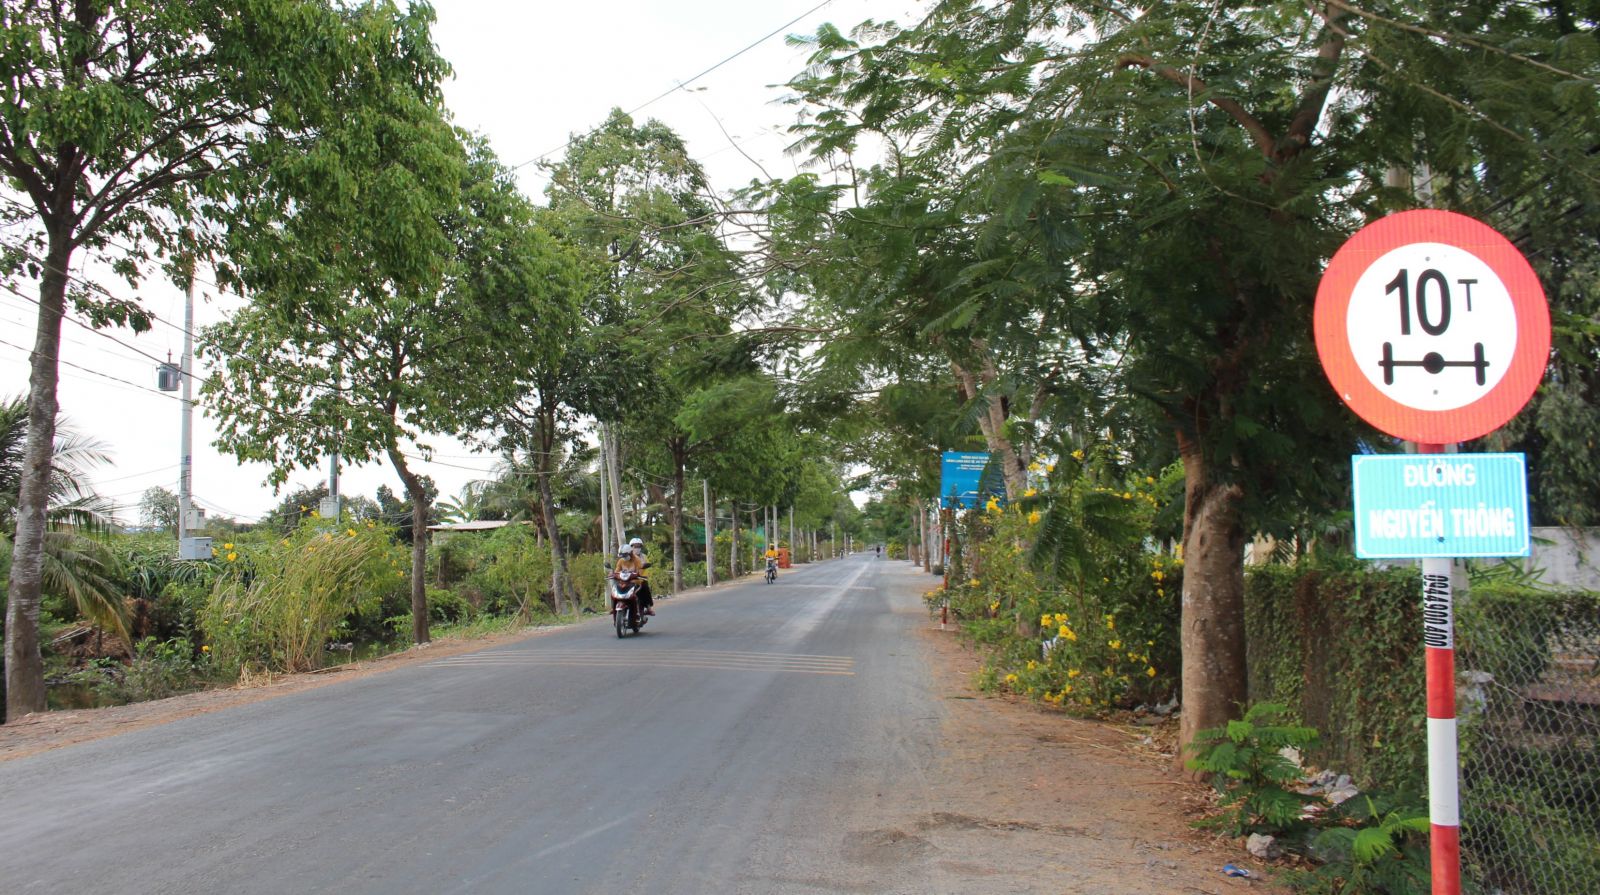 Bộ mặt nông thôn xã Phú Ngãi Trị ngày càng khởi sắc